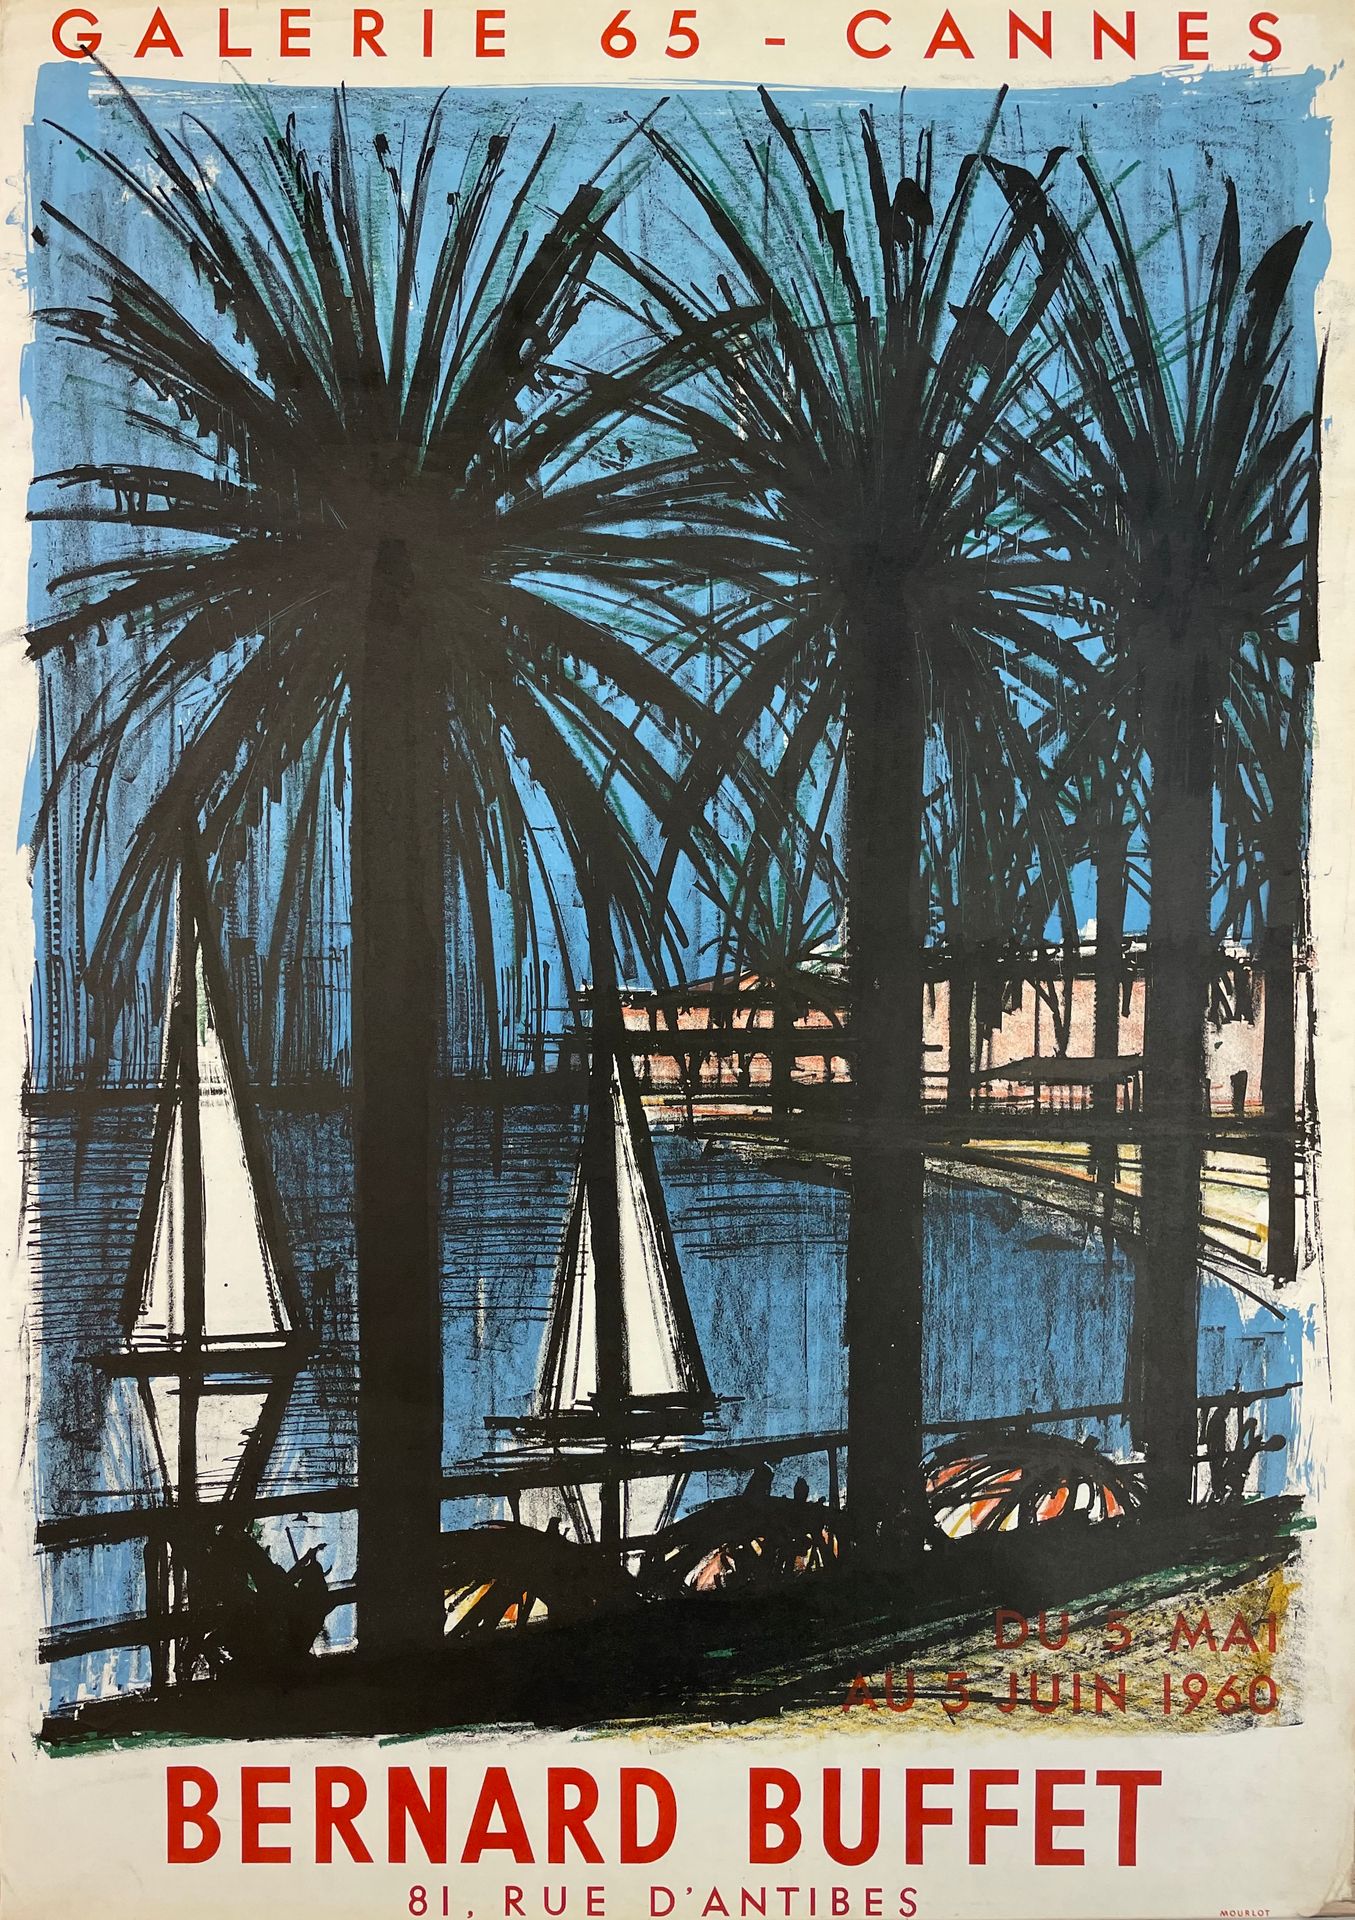 Buffet (Bernard). 
海报（1960年）。为他在戛纳65画廊的展览制作的彩色石版画。尺寸：77.5 x 63厘米（边缘有切口，下角丢失）。